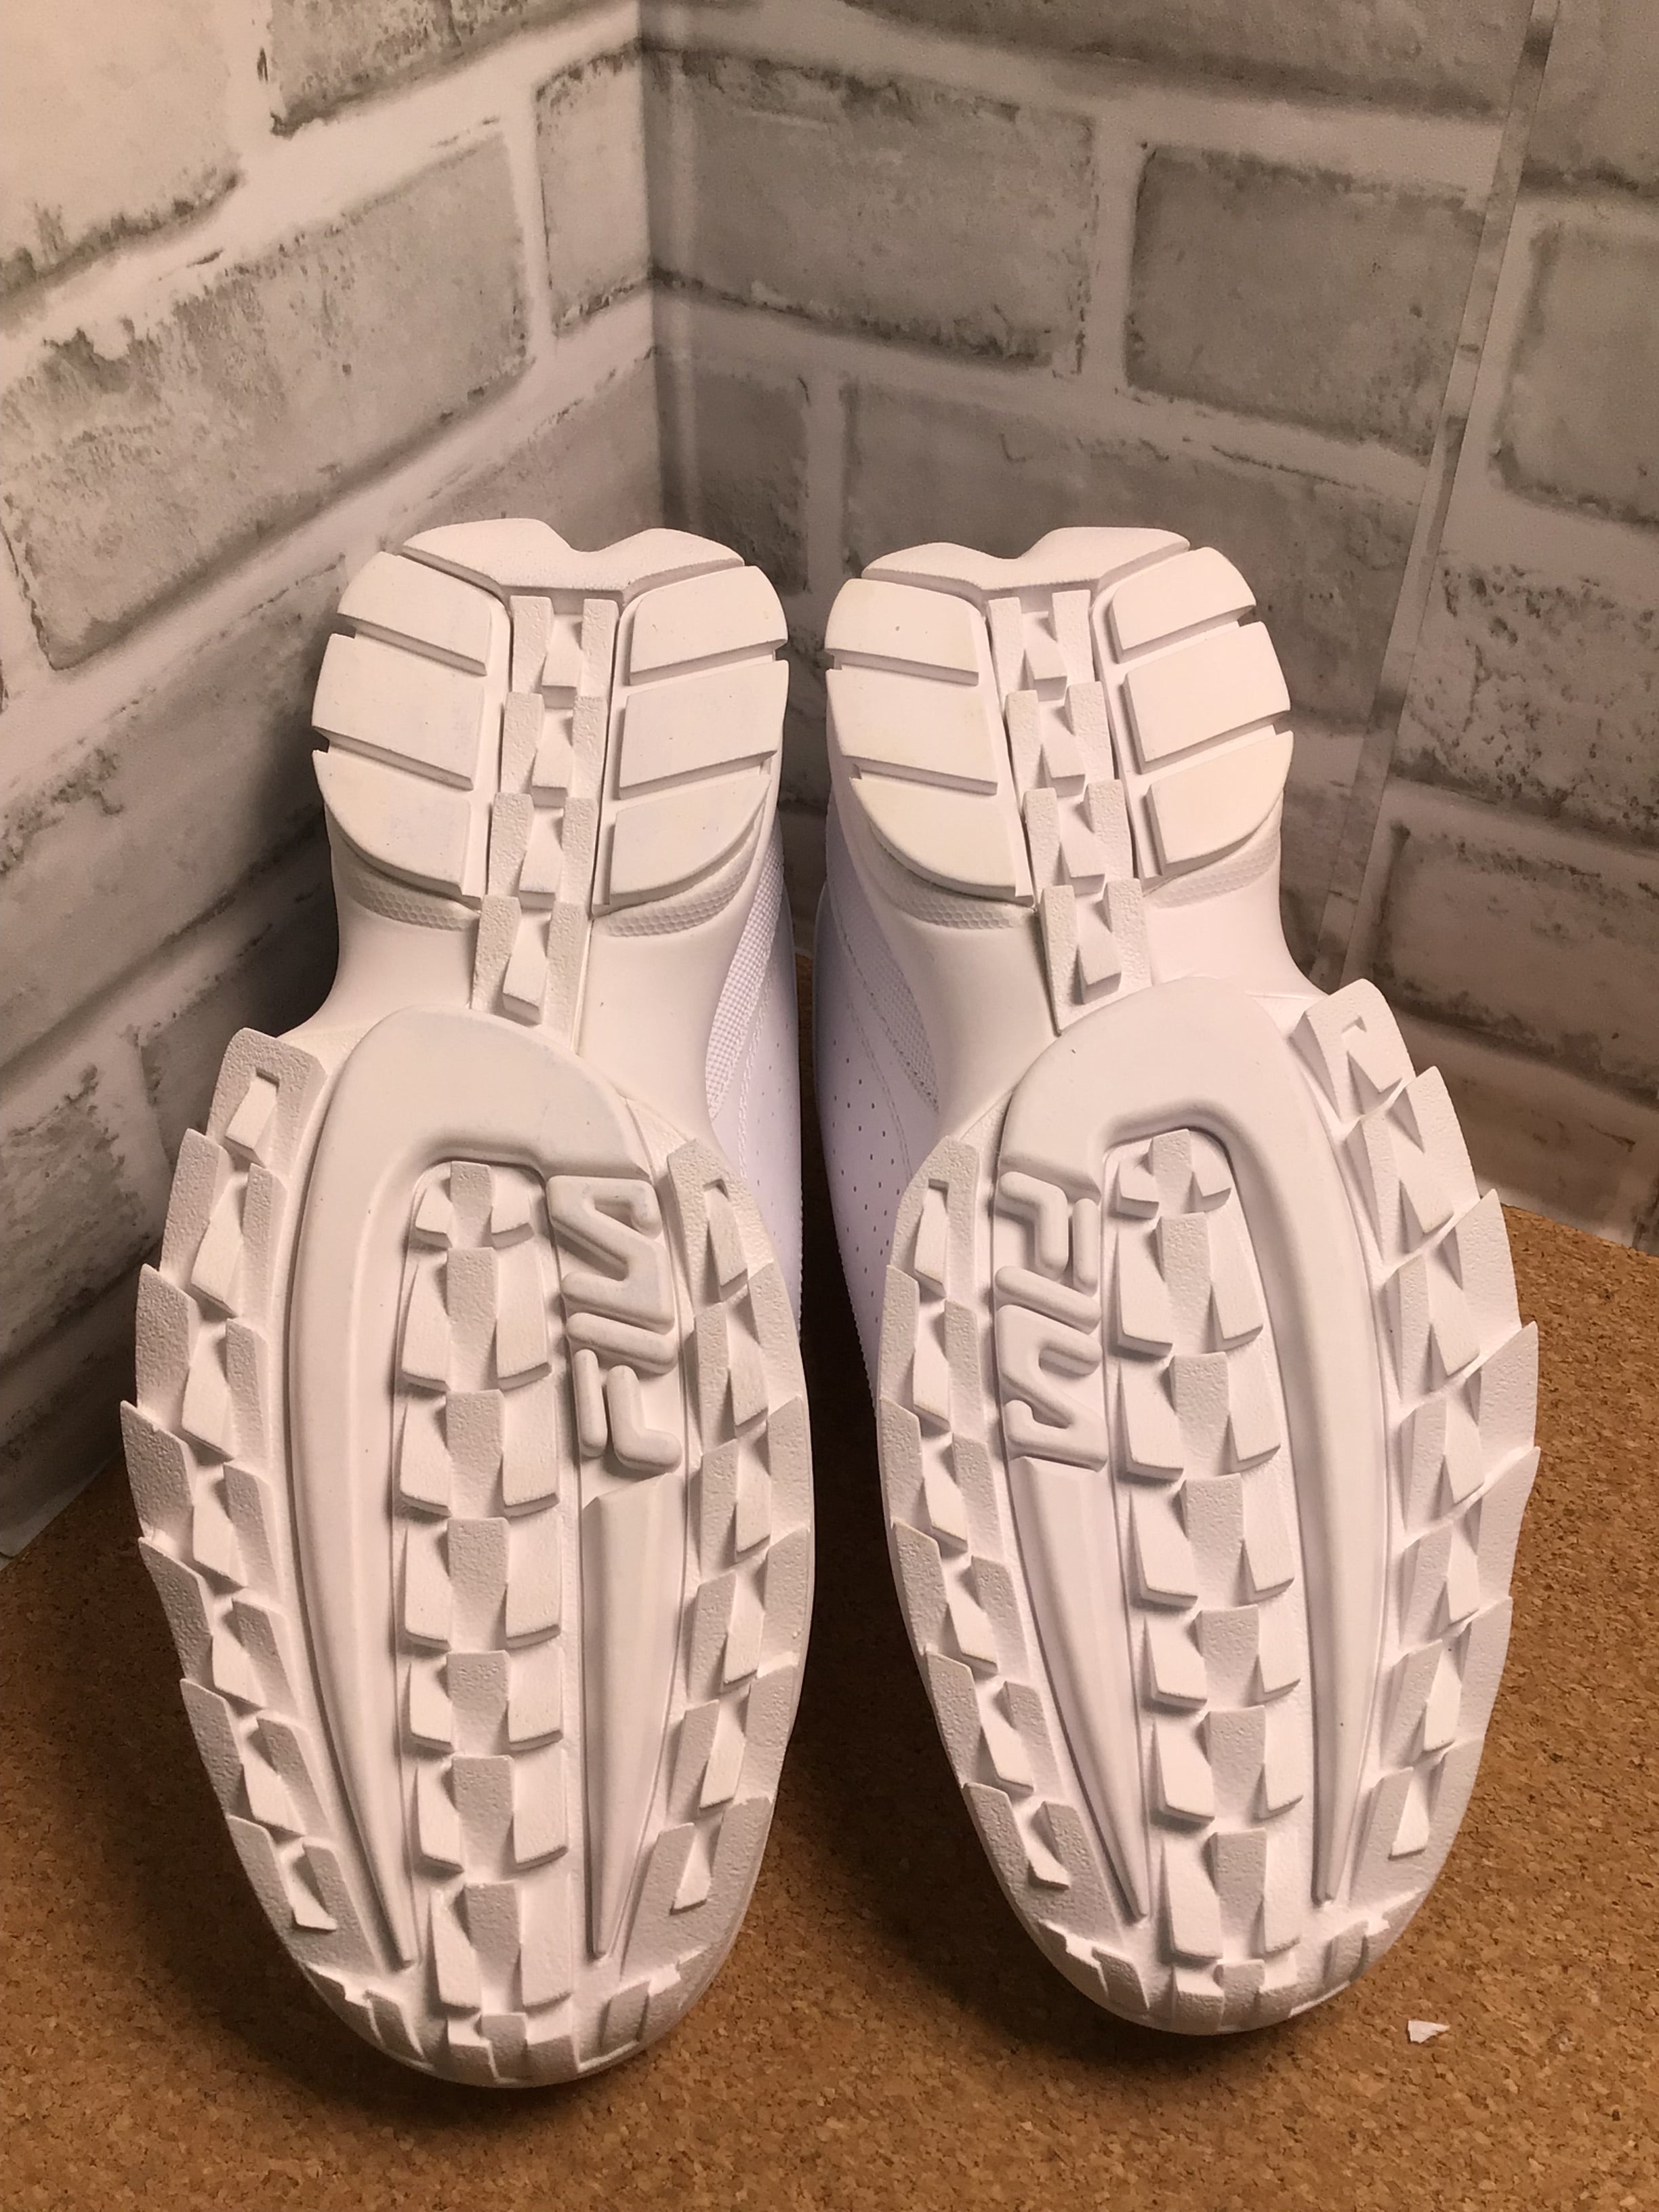 Fila Men's Disruptor II Sneaker Size 7.5**Brand New** (7781804736750)